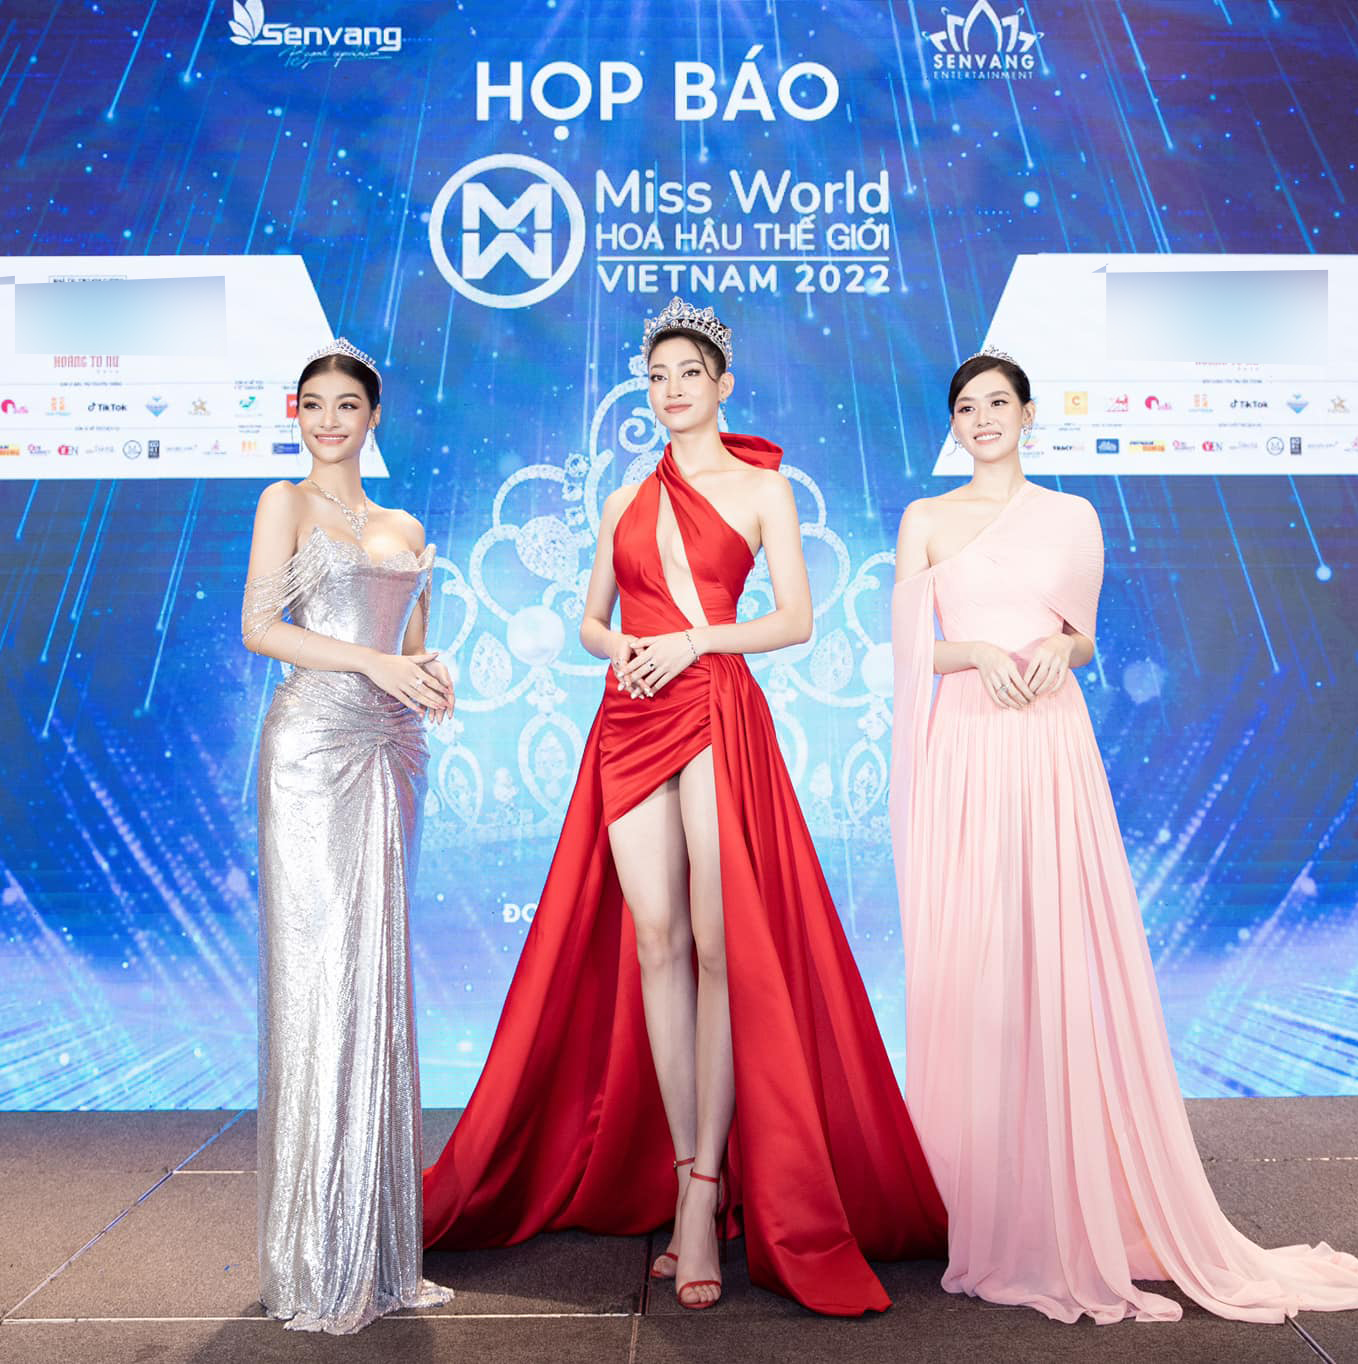 Hôm qua diễn ra họp báo 'Miss World 2022' tại Việt Nam.